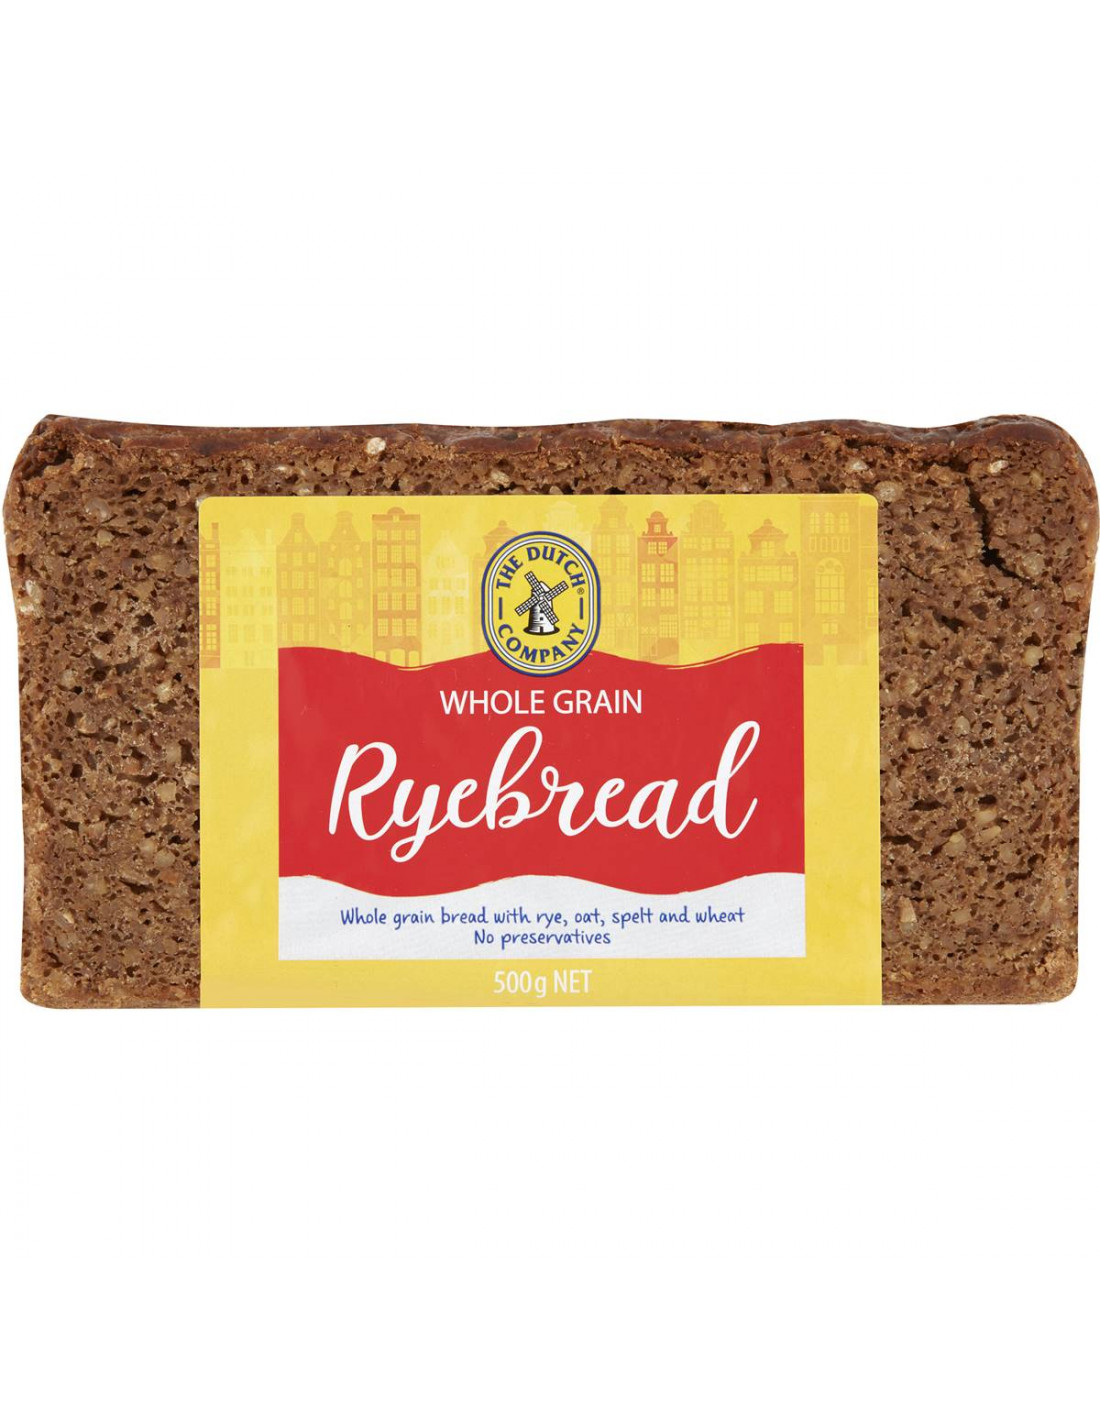 Wholegrain Bread German Rye : Rye Bread Wikipedia : Don't ...